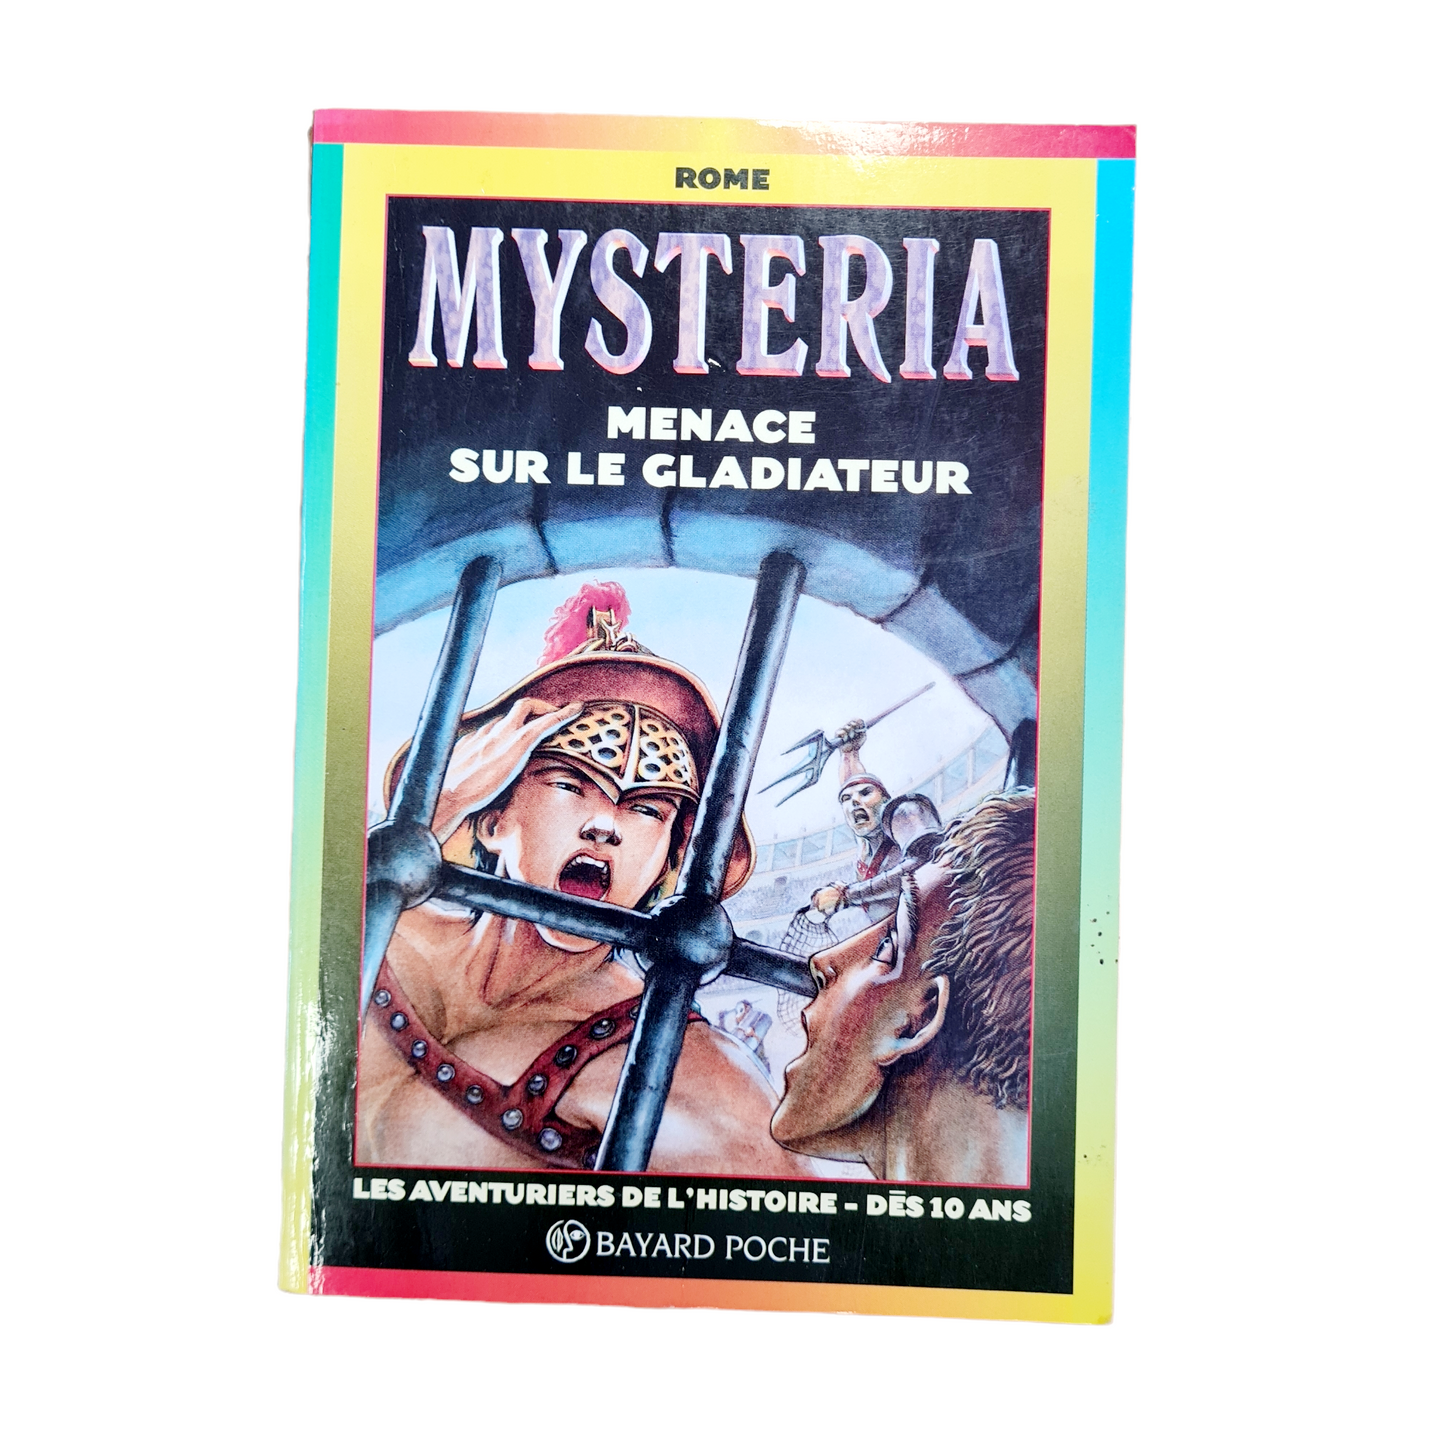 Menace sur le gladiateur | Mysteria